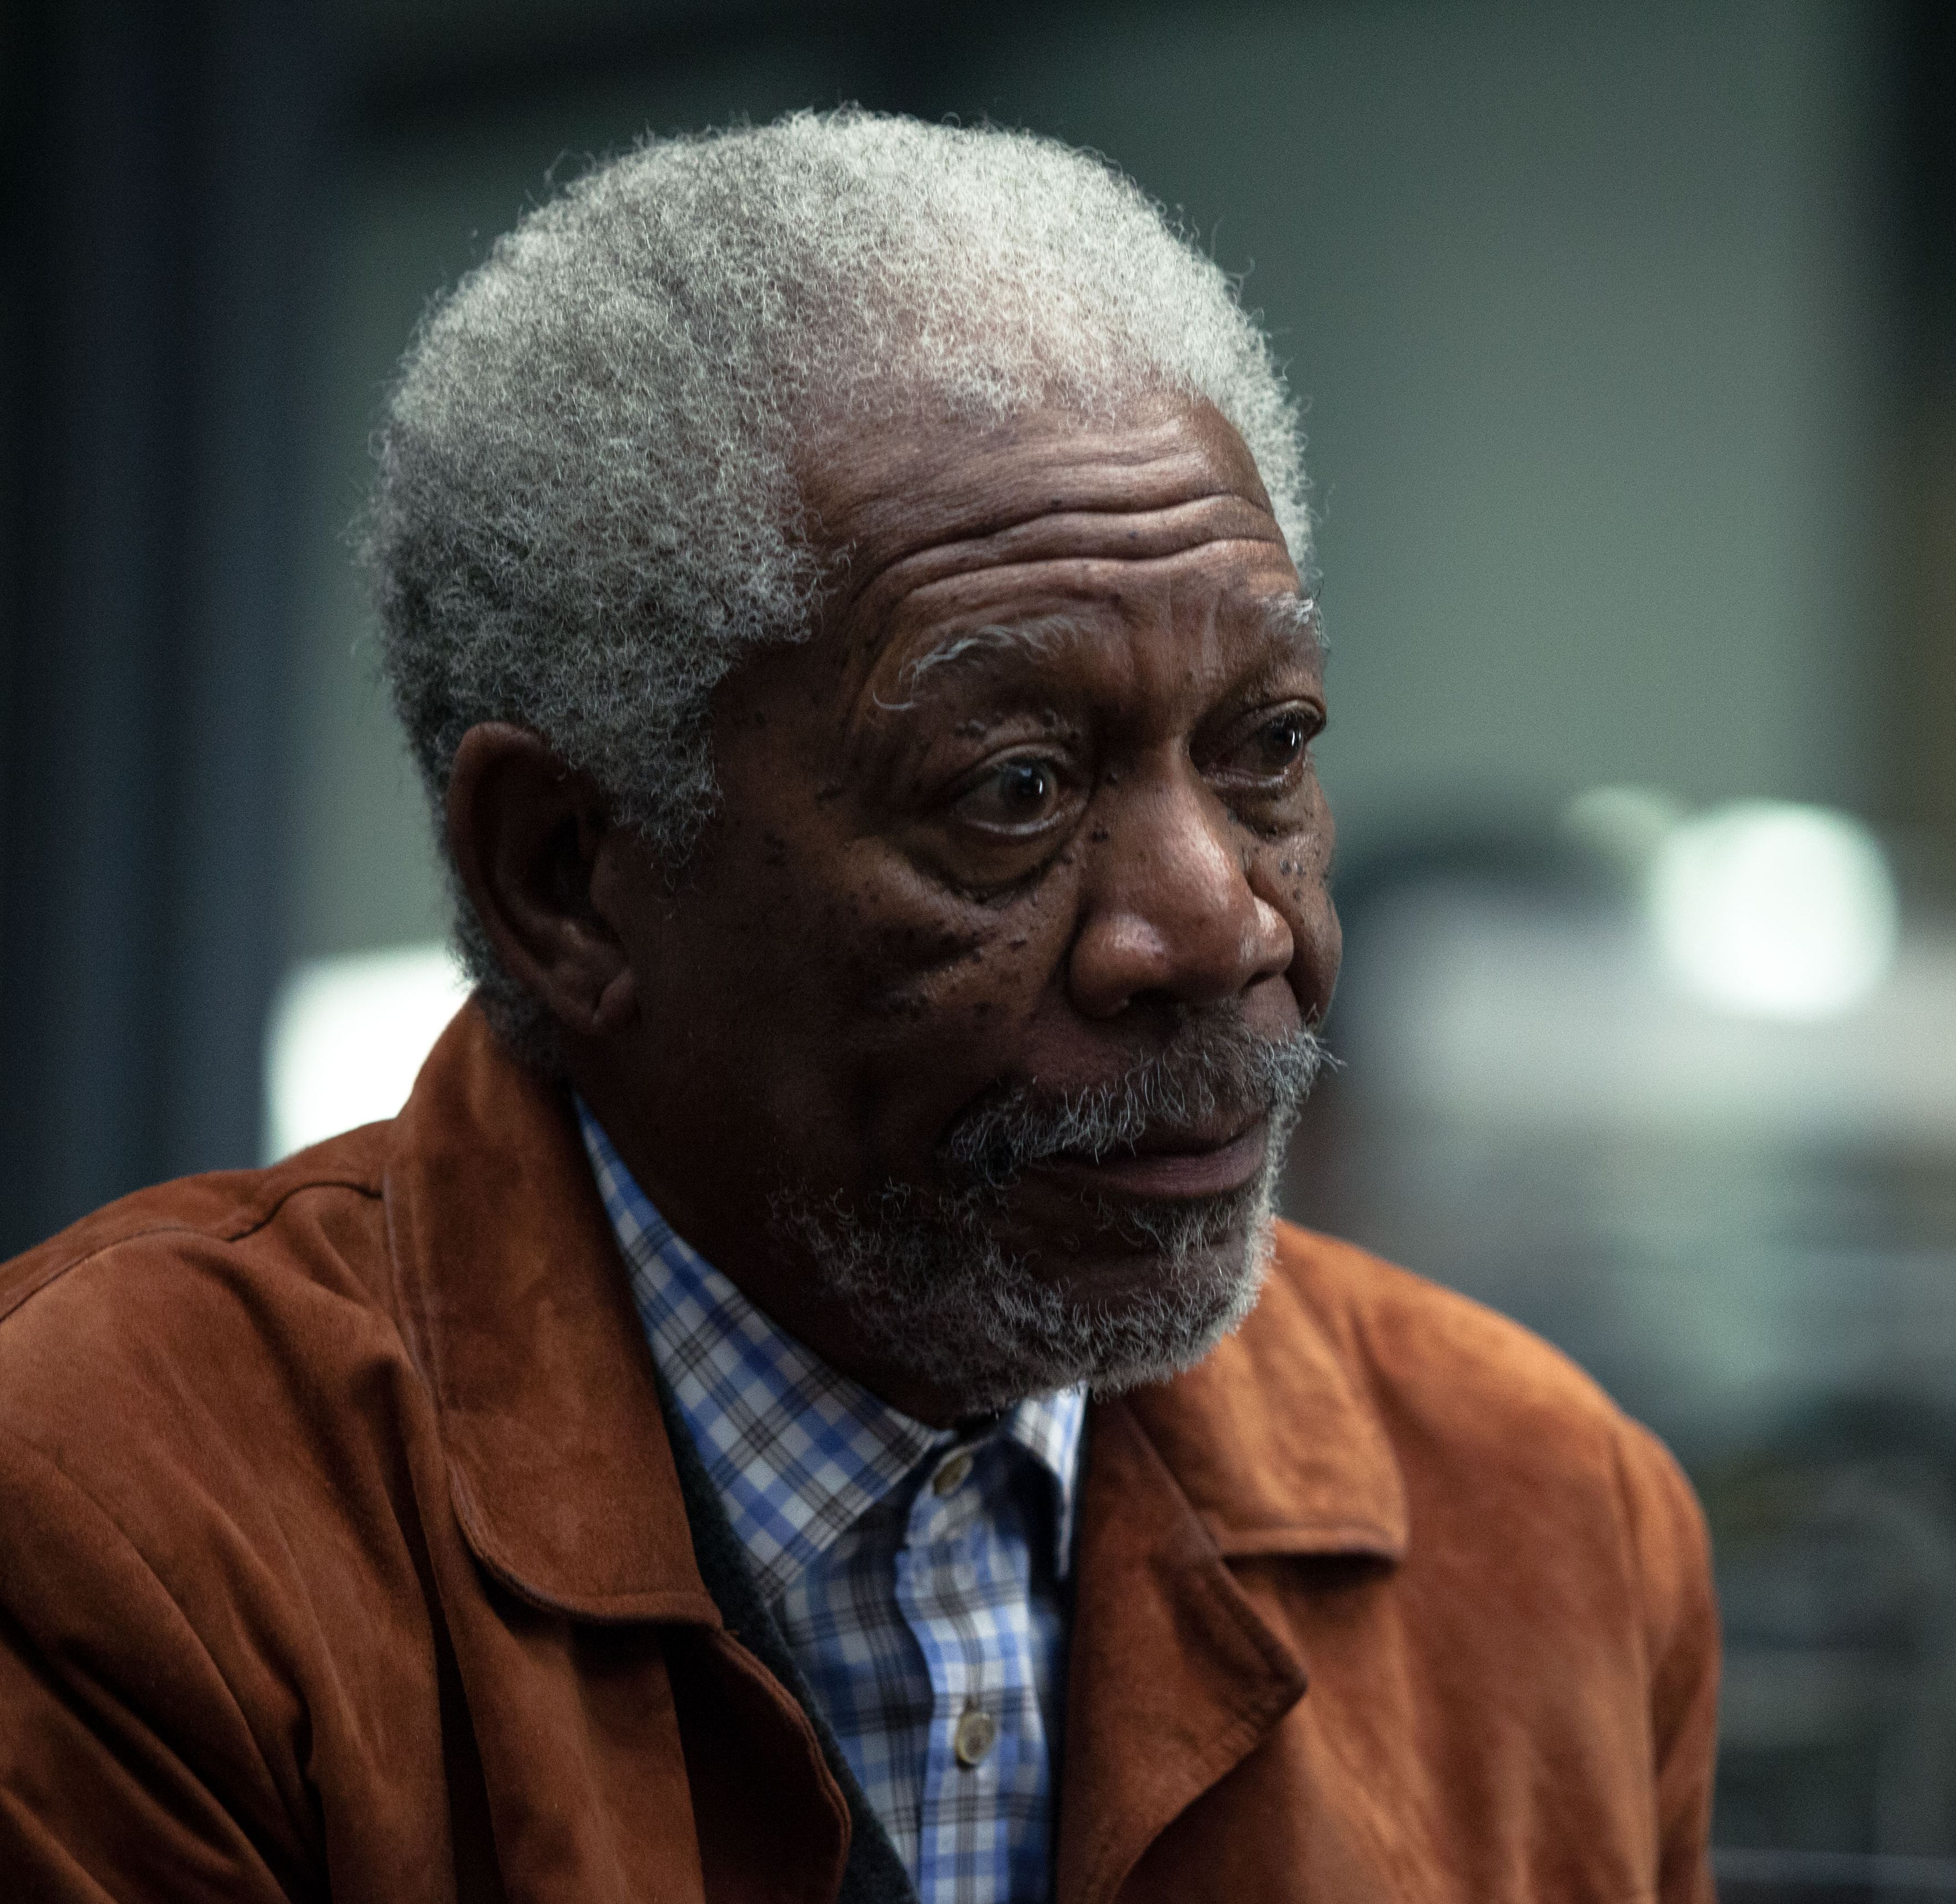 Morgan Freeman stunned in Transcendence